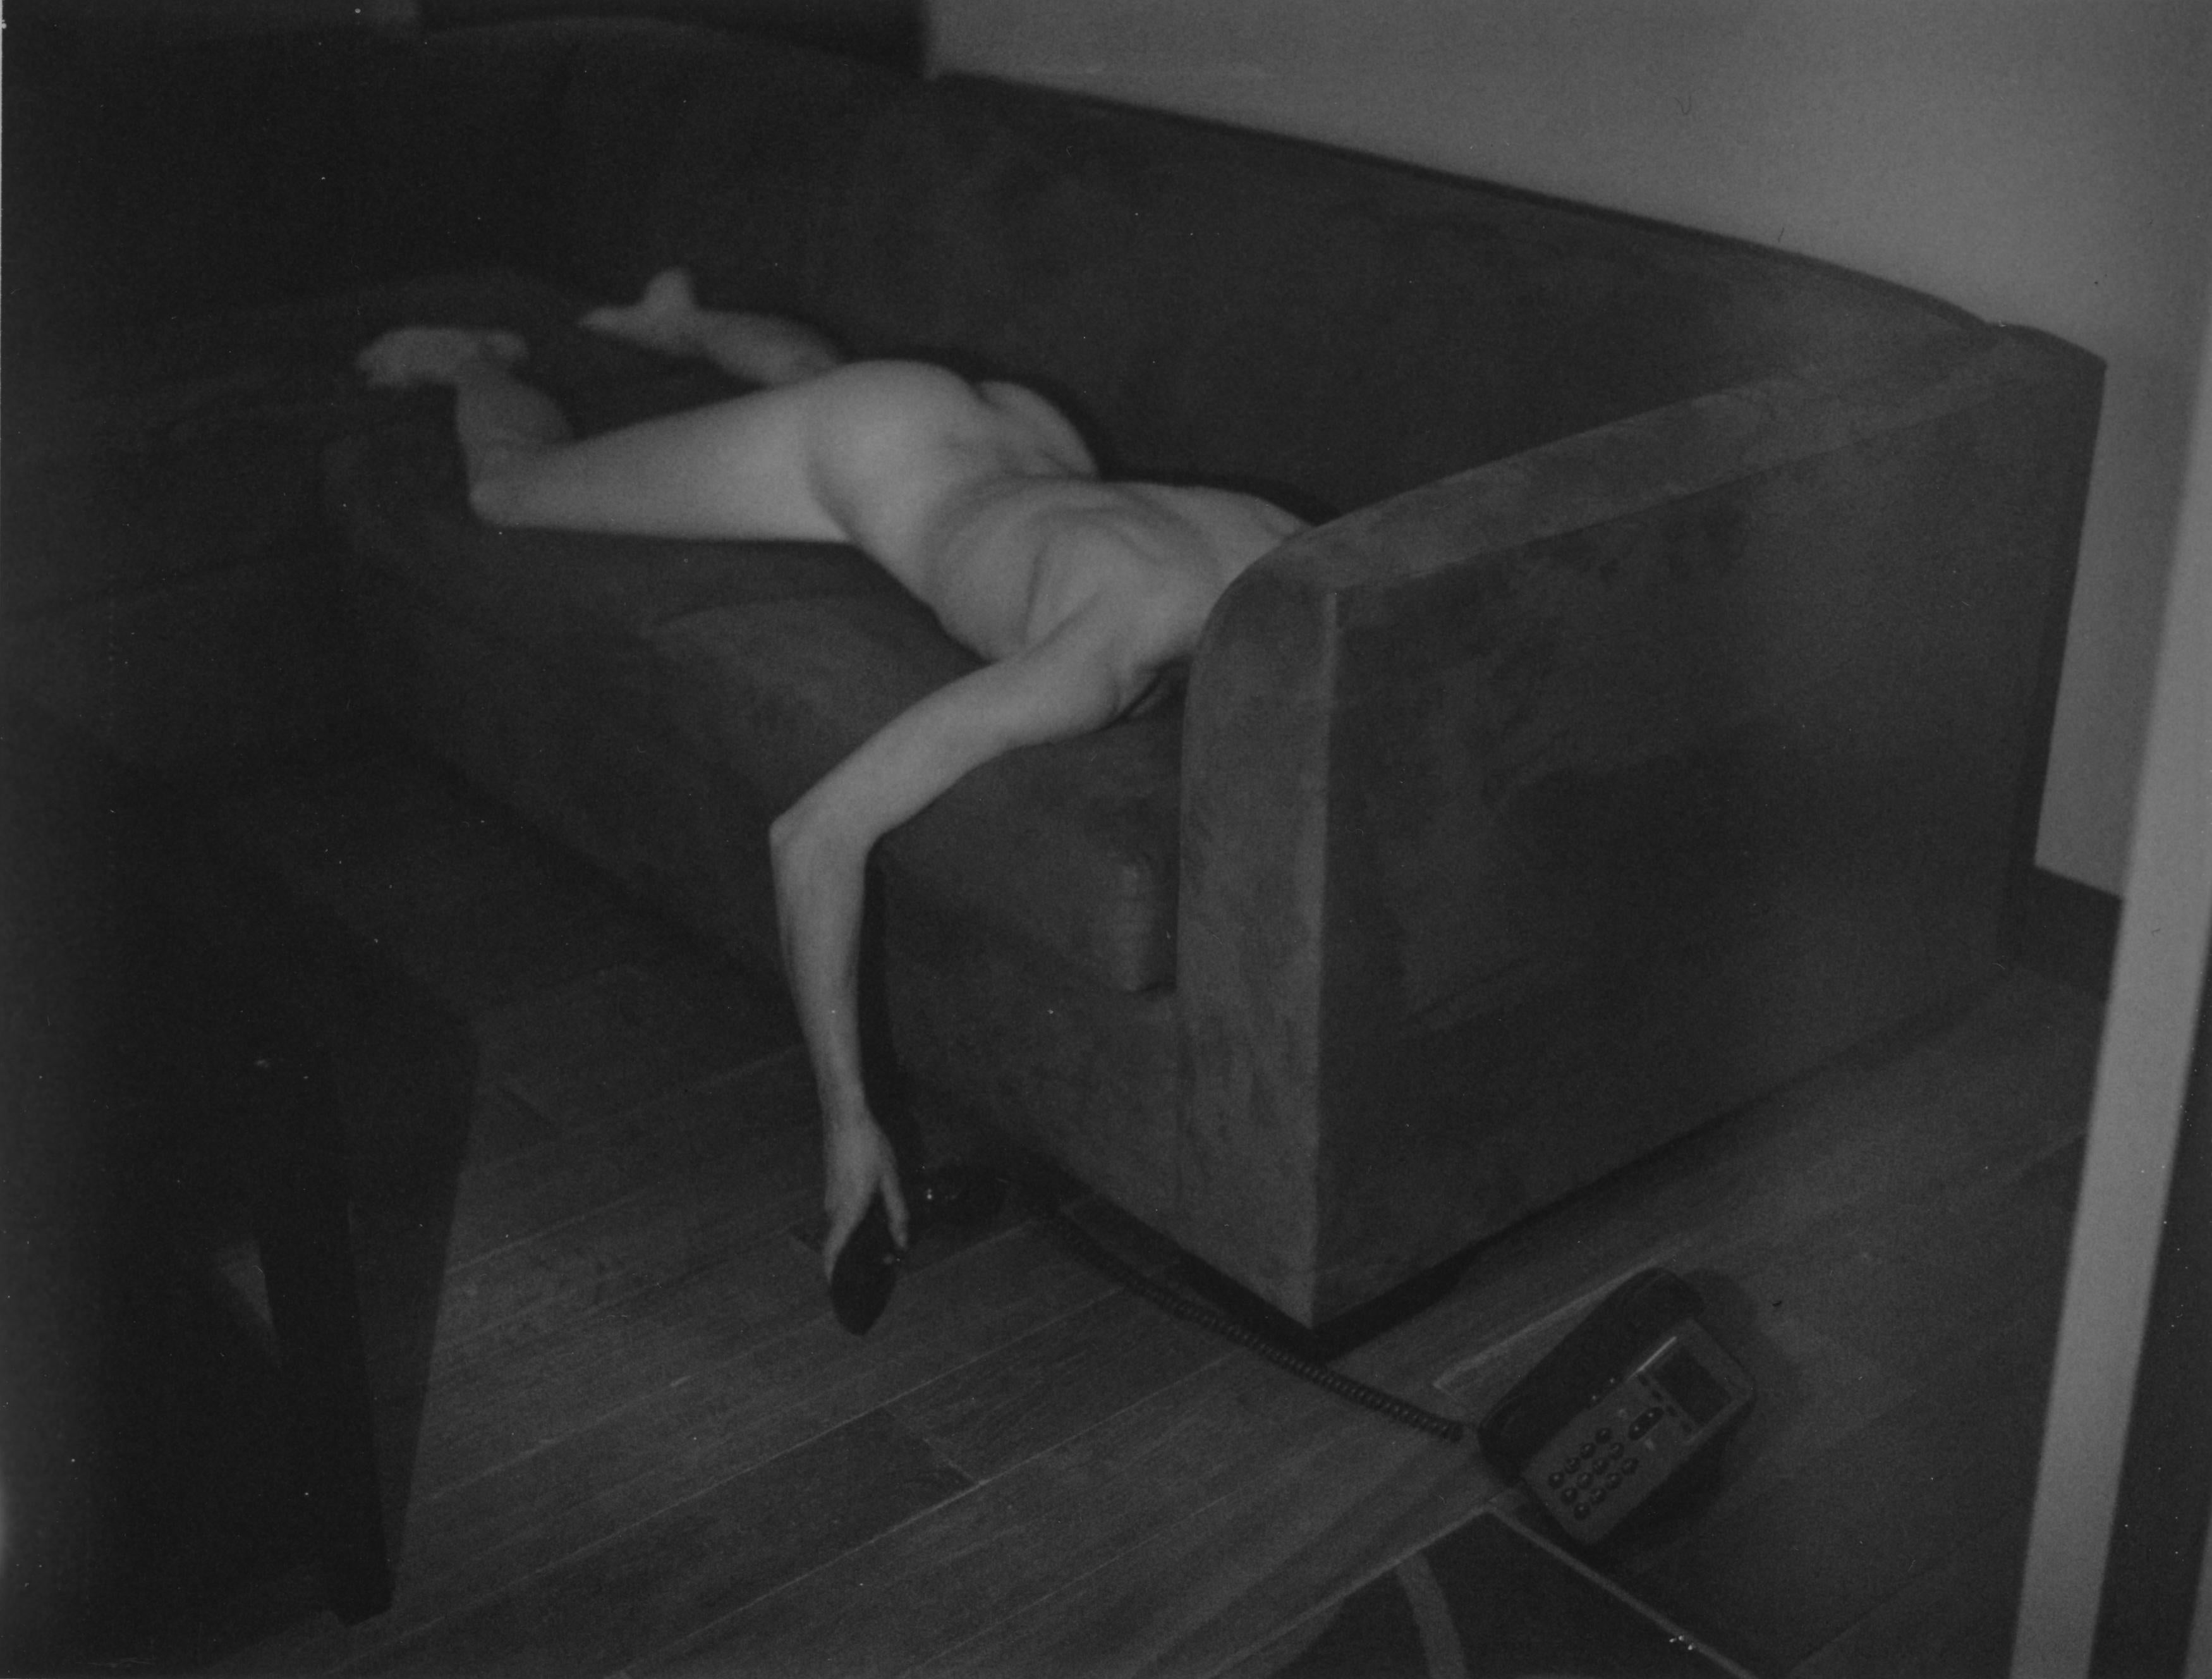 Kirsten Thys van den Audenaerde Nude Photograph - Operator? - 21st Century, Polaroid, Nude, Photography, Women